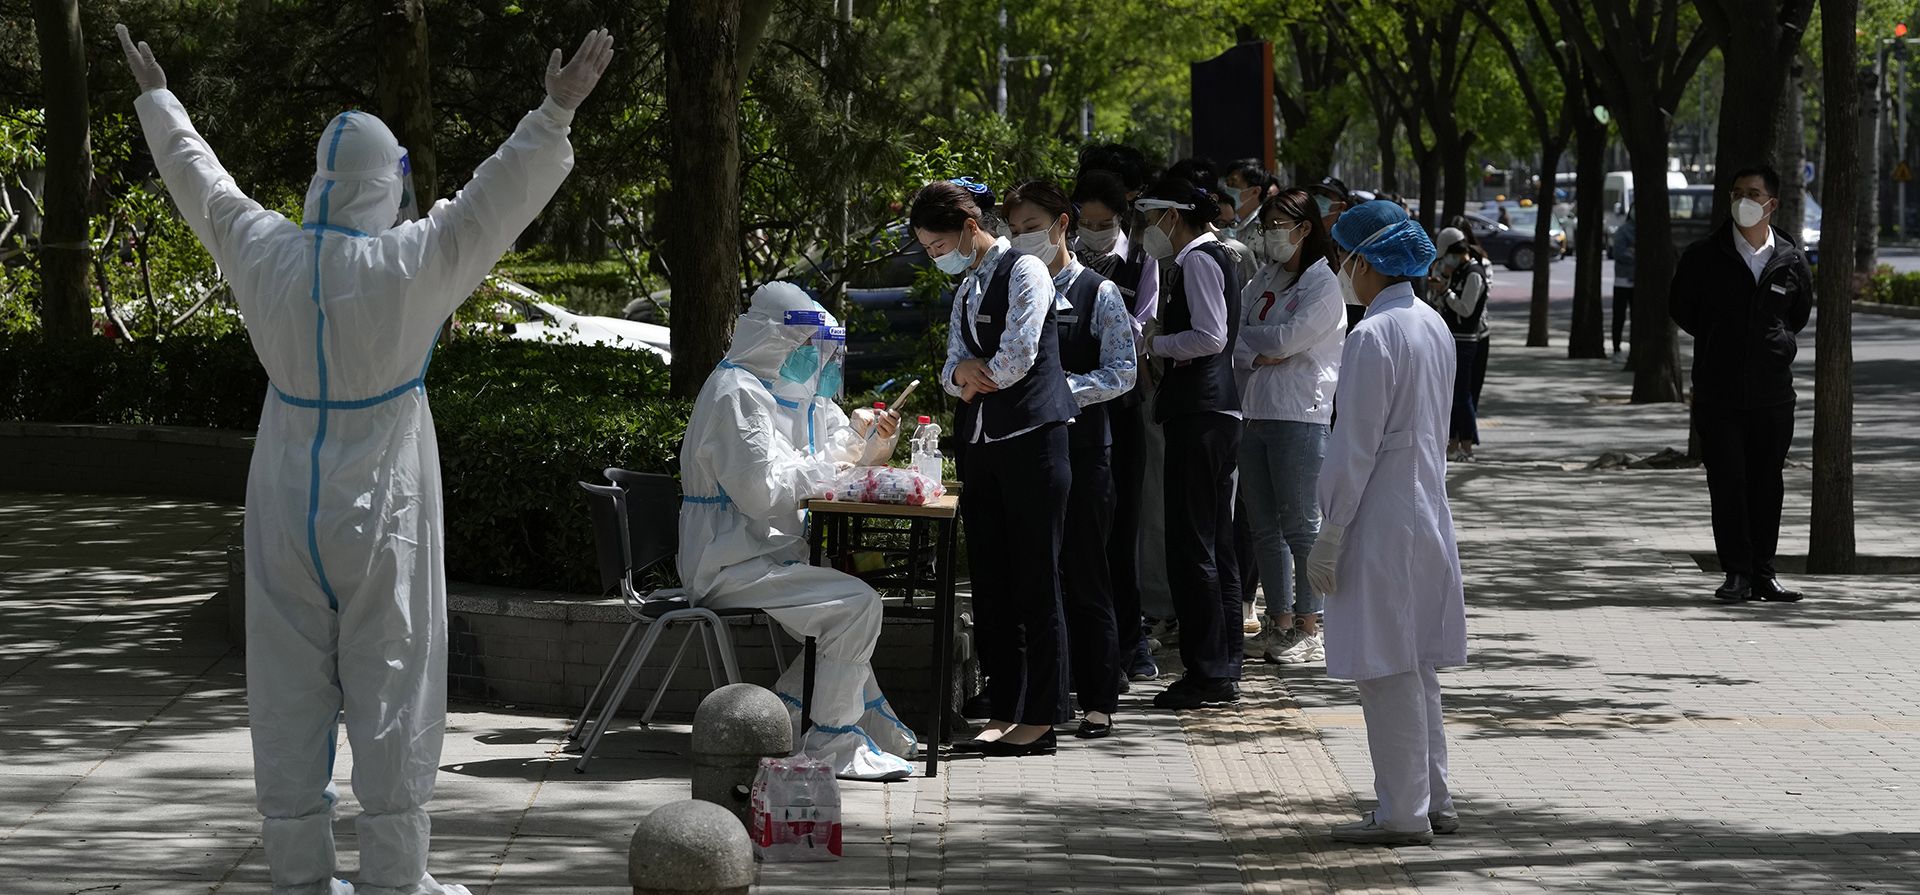 Residentes hacen fila para las pruebas de COVID en el distrito de Haidian el martes 26 de abril de 2022 en Beijing. La capital de China, Beijing, está imponiendo pruebas masivas y cerrando el acceso a los vecindarios mientras busca contener un nuevo brote de COVID-19. 